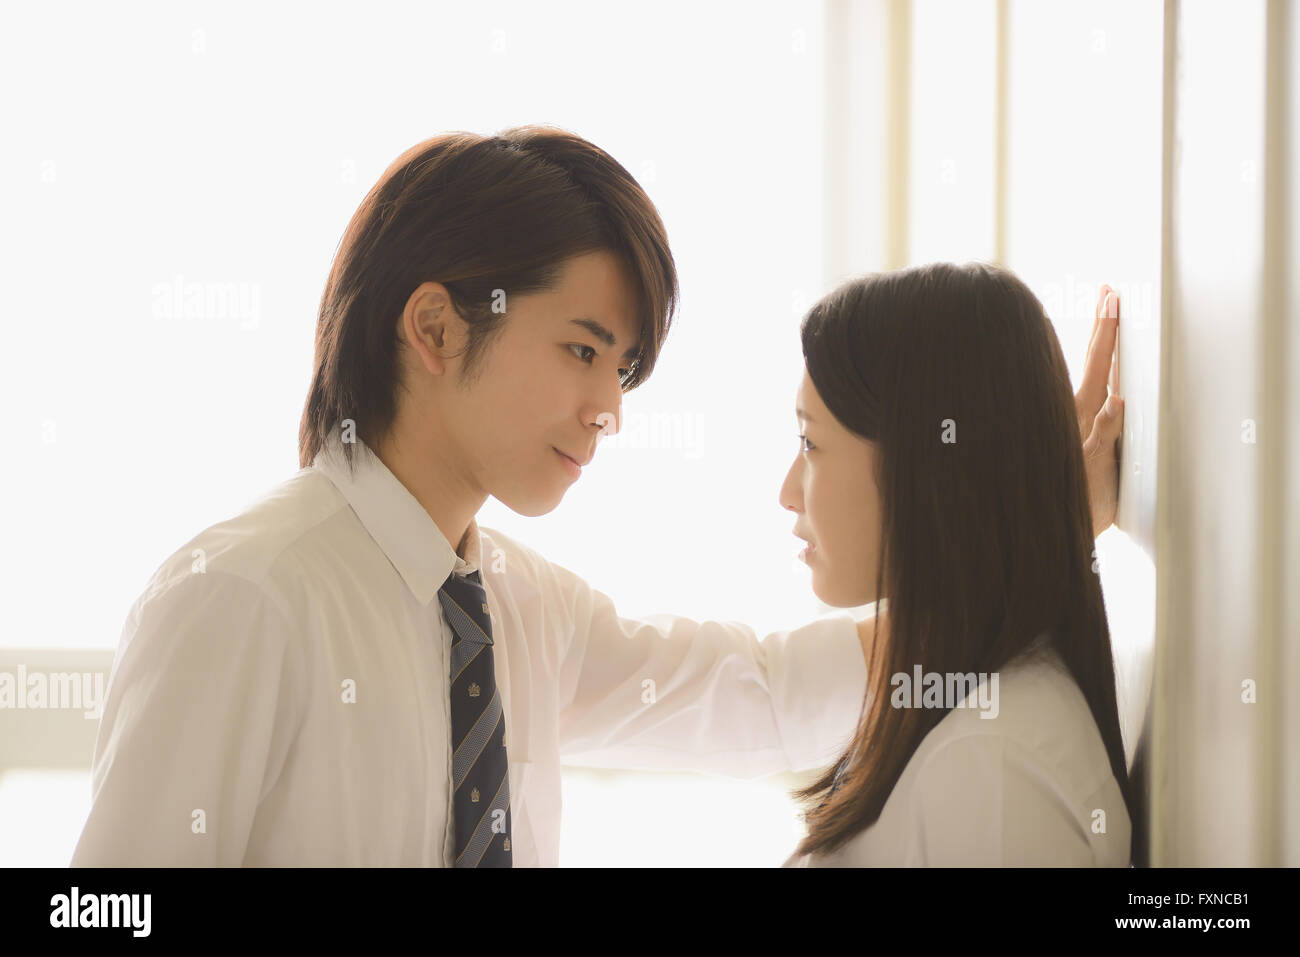 Les lycéens japonais dans un moment romantique dans le couloir d'école Banque D'Images